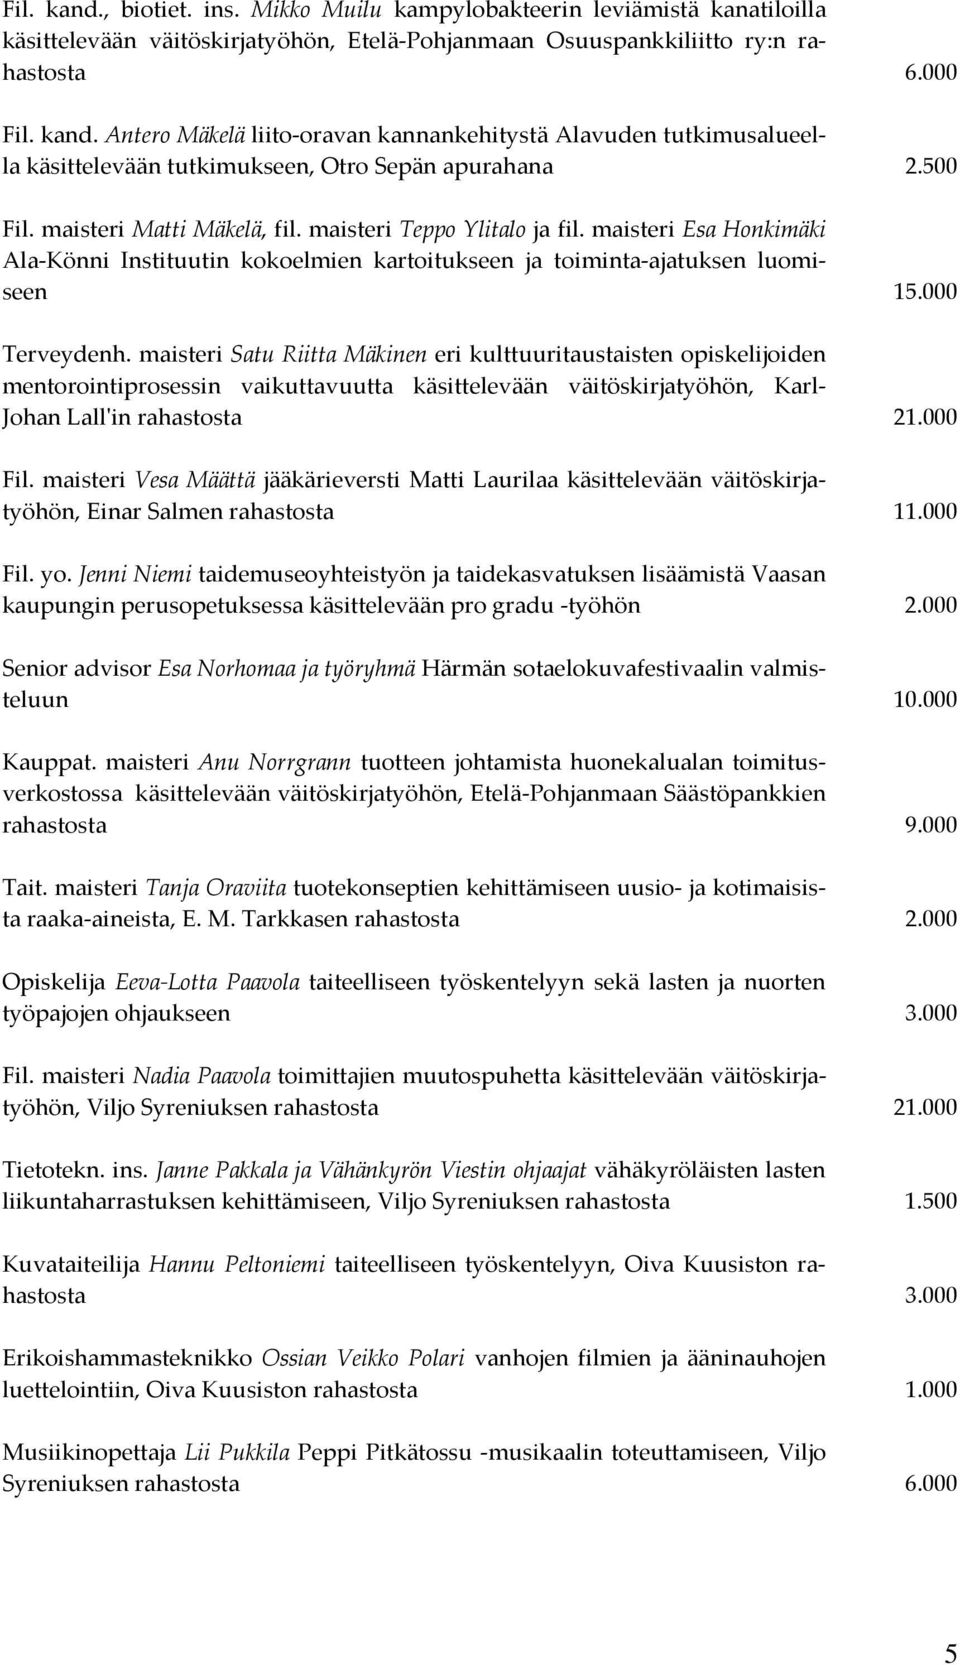 maisteri Satu Riitta Mäkinen eri kulttuuritaustaisten opiskelijoiden mentorointiprosessin vaikuttavuutta käsittelevään väitöskirjatyöhön, Karl- Johan Lall'in rahastosta 21.000 Fil.